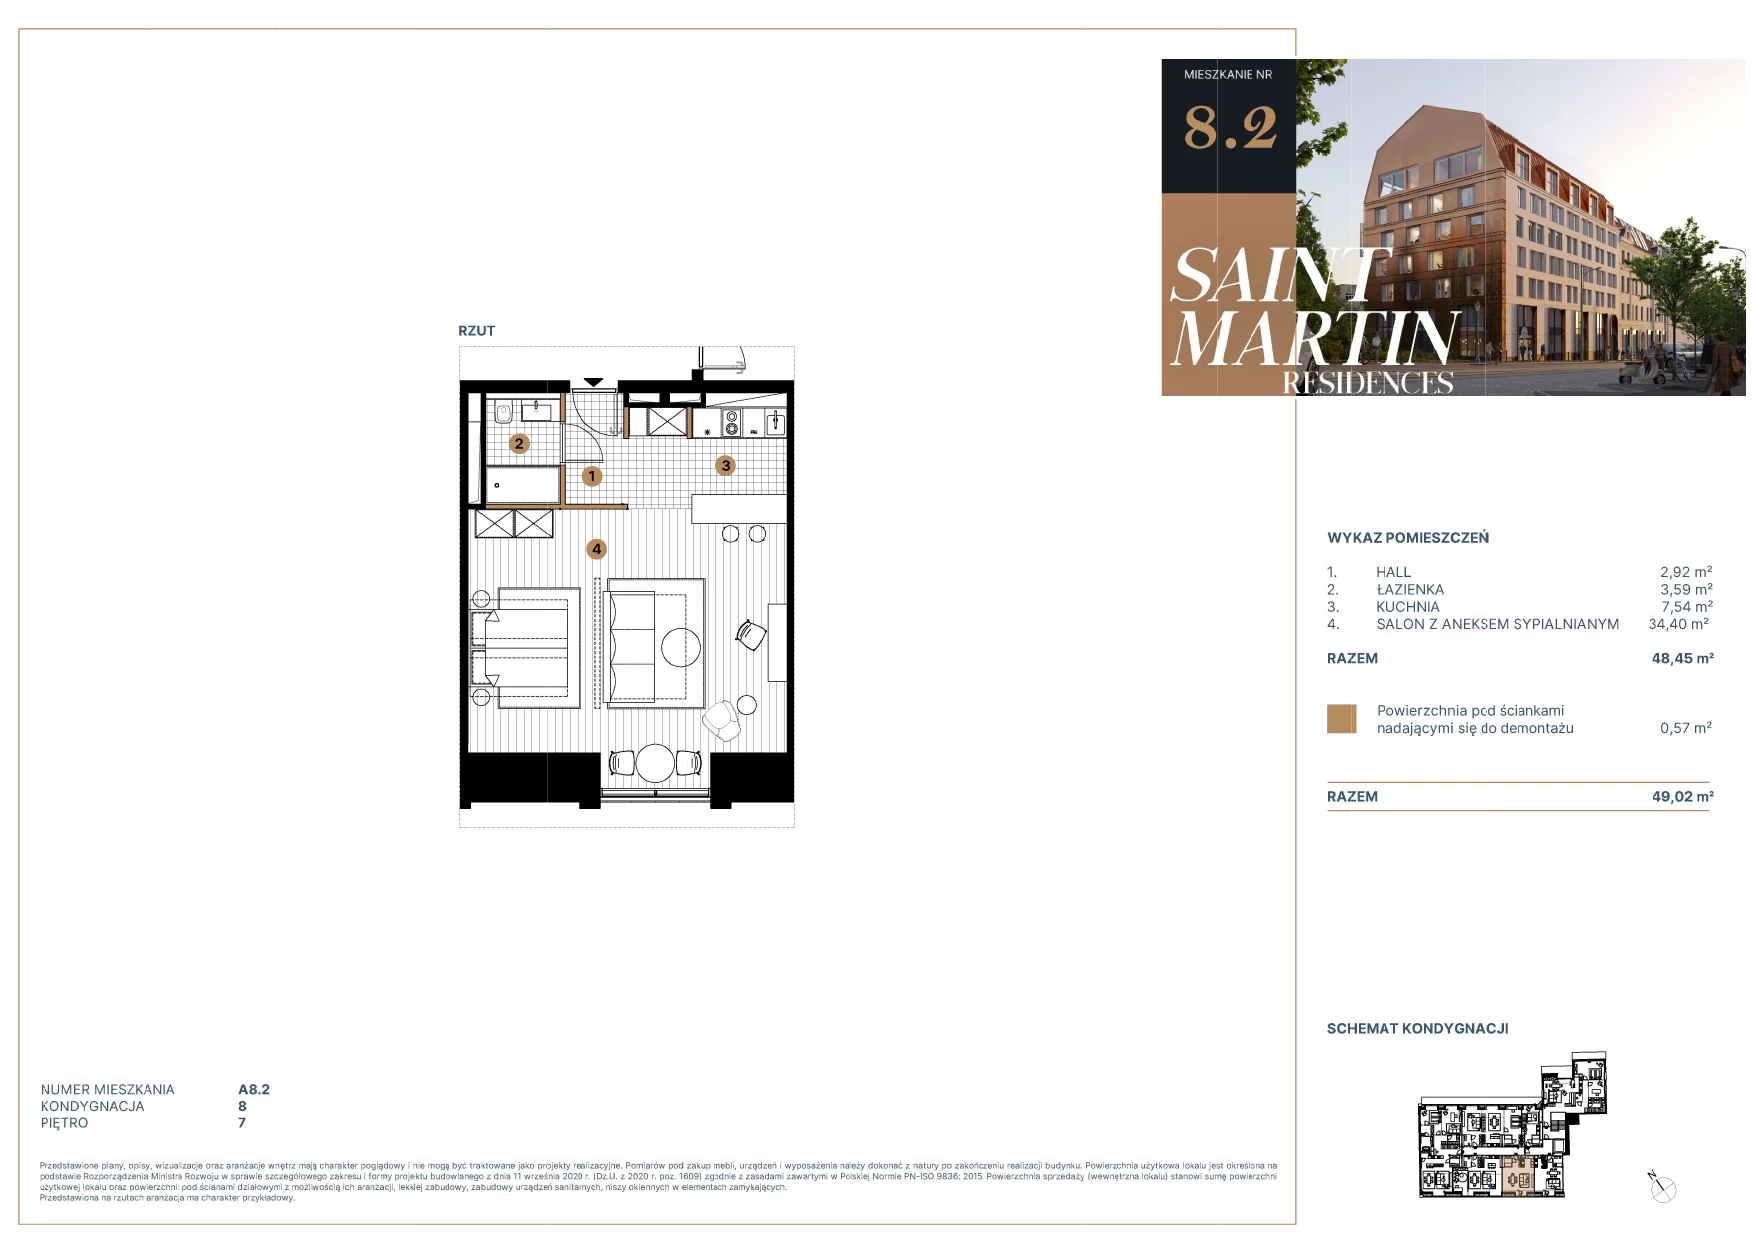 Mieszkanie 48,50 m², piętro 7, oferta nr A8.2, Saint Martin Residences II, Poznań, Stare Miasto, Stare Miasto, ul. Podgórna 7